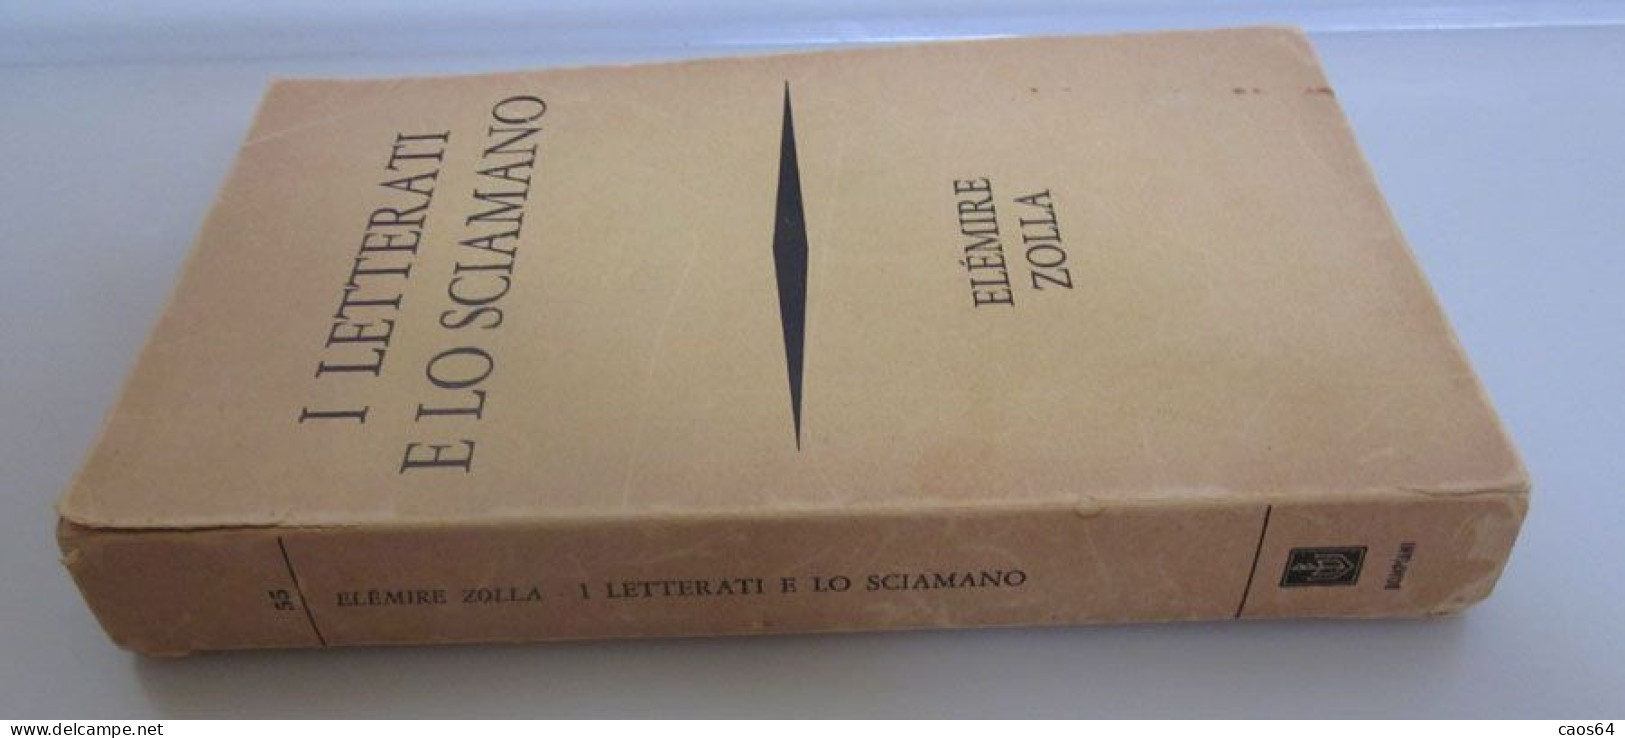 I Letterati E Lo Sciamano Elémire Zolla Bompiani 1969 - Godsdienst